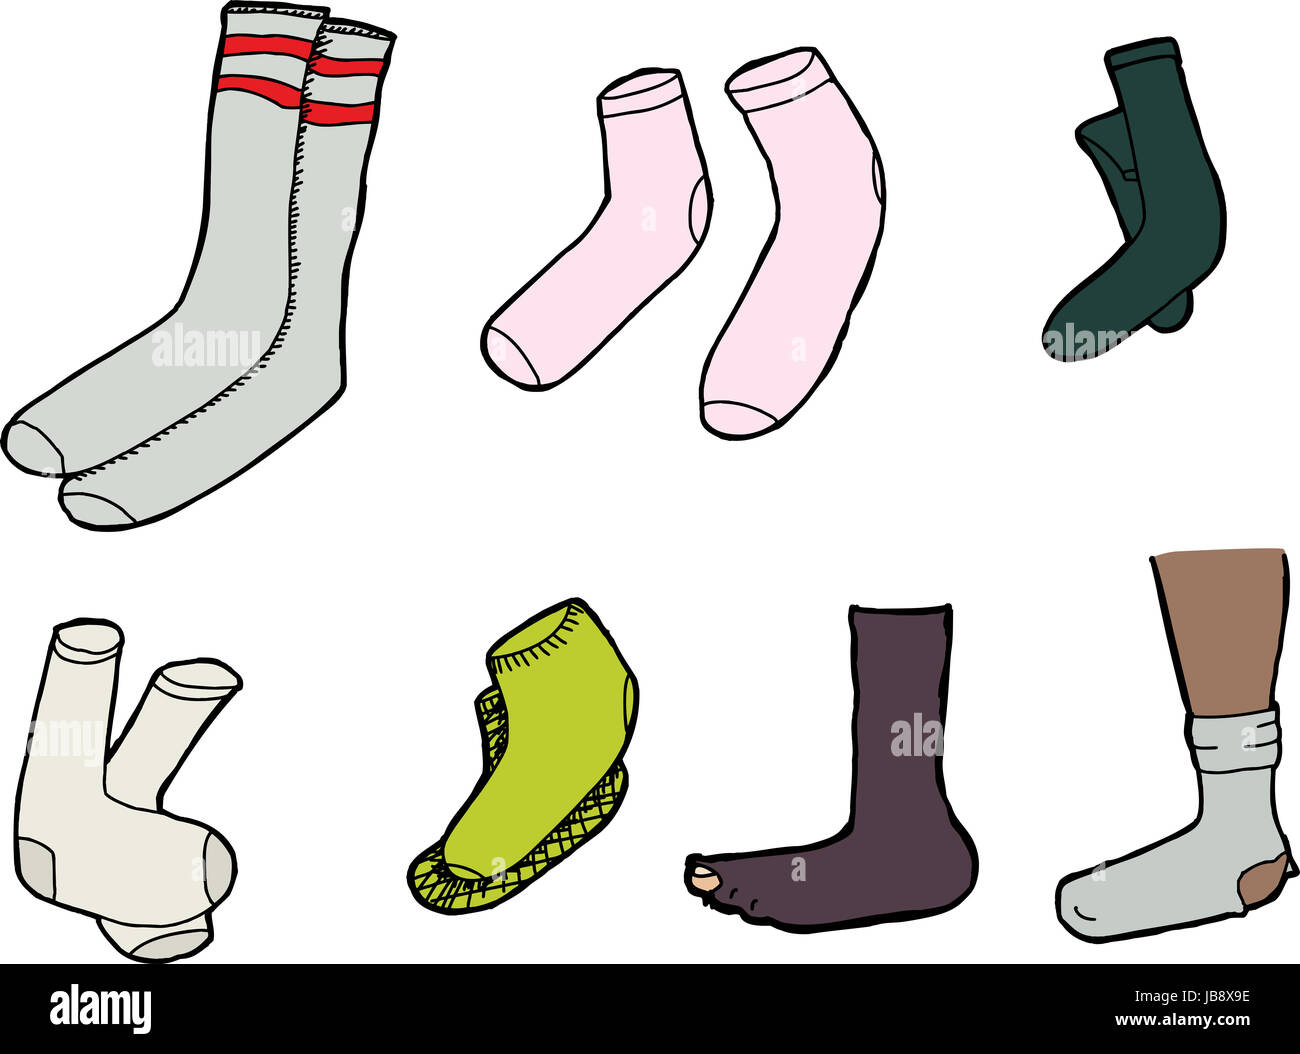 Varios calcetines caricaturas sobre fondo blanco aislado de - Alamy